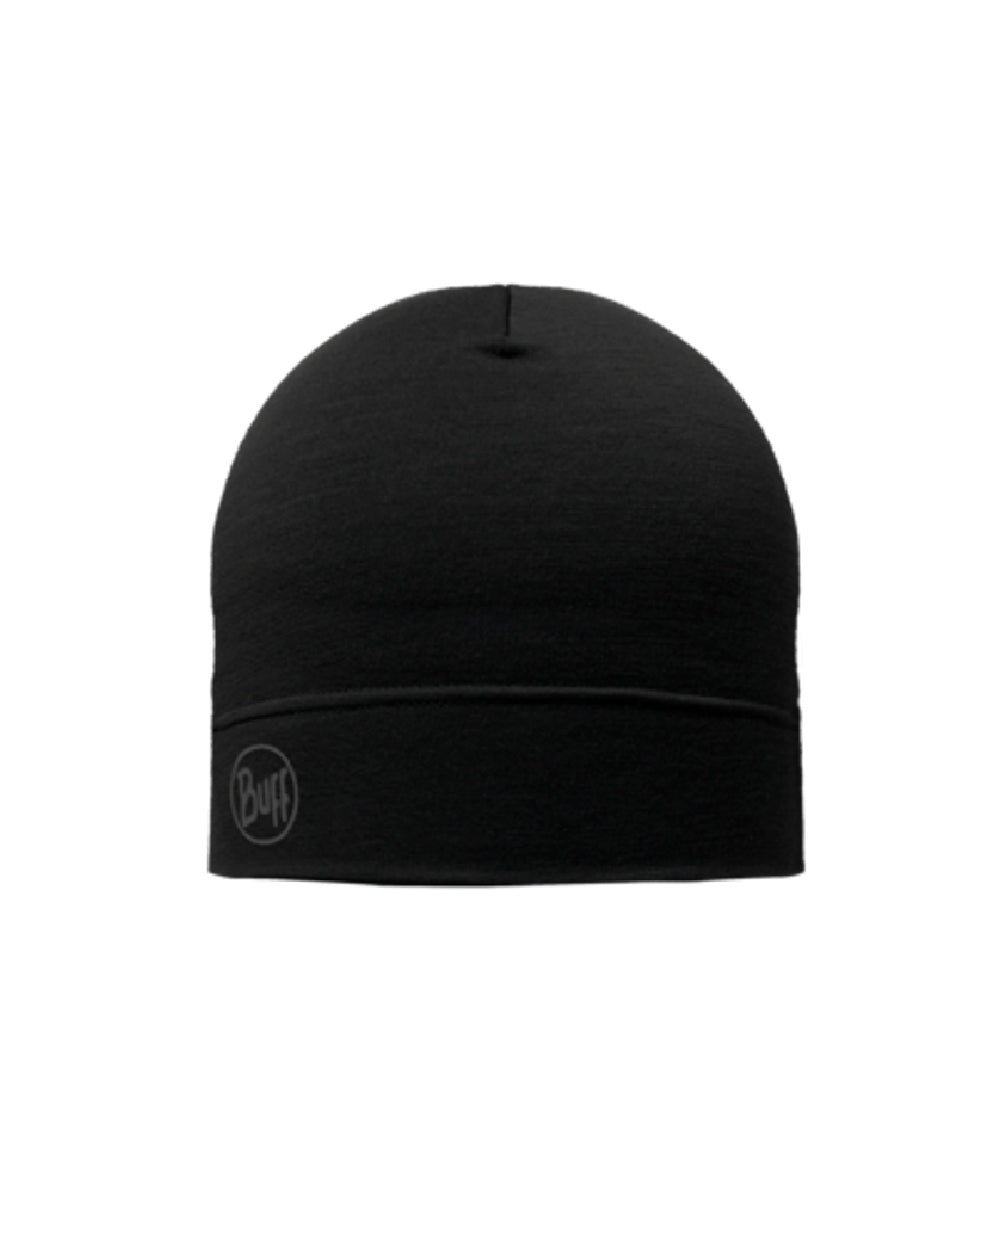 Pack Merino Fleece Cap - Solid Black, BUFF®